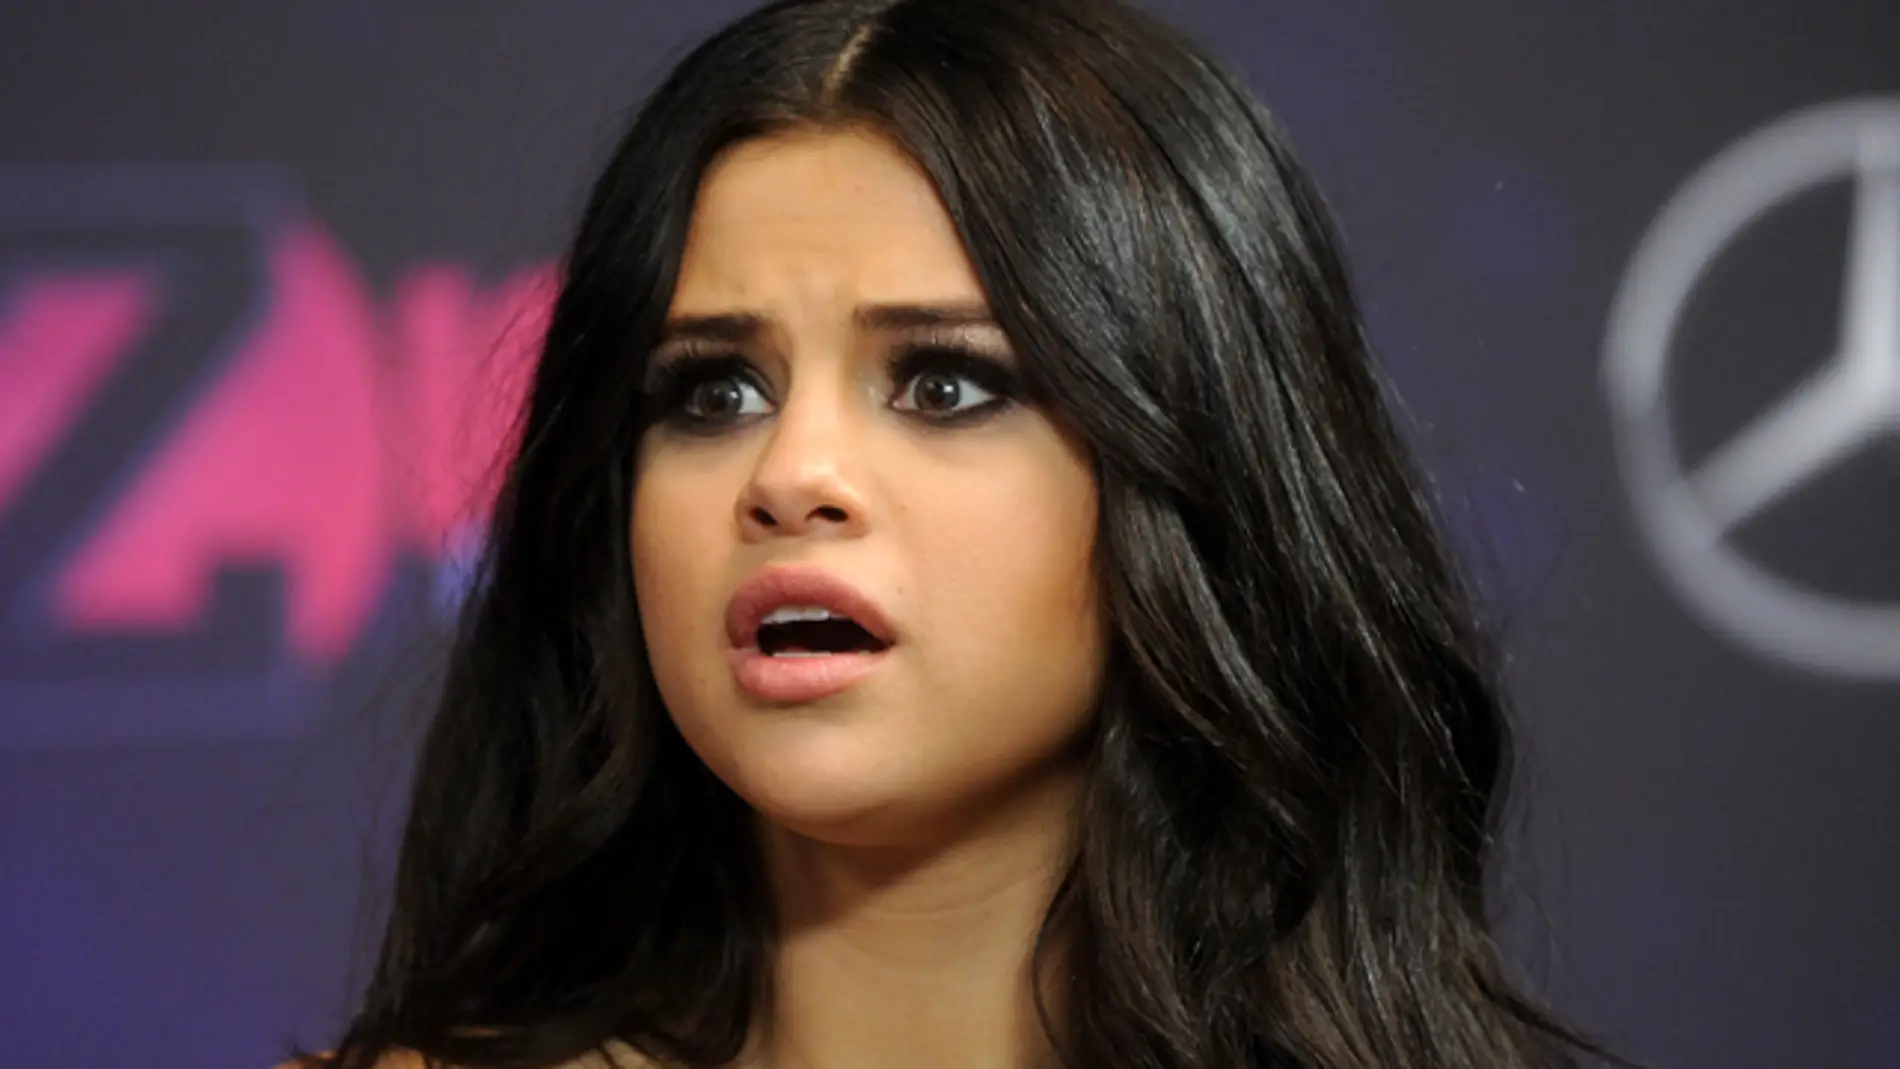 Selena Gomez asustada